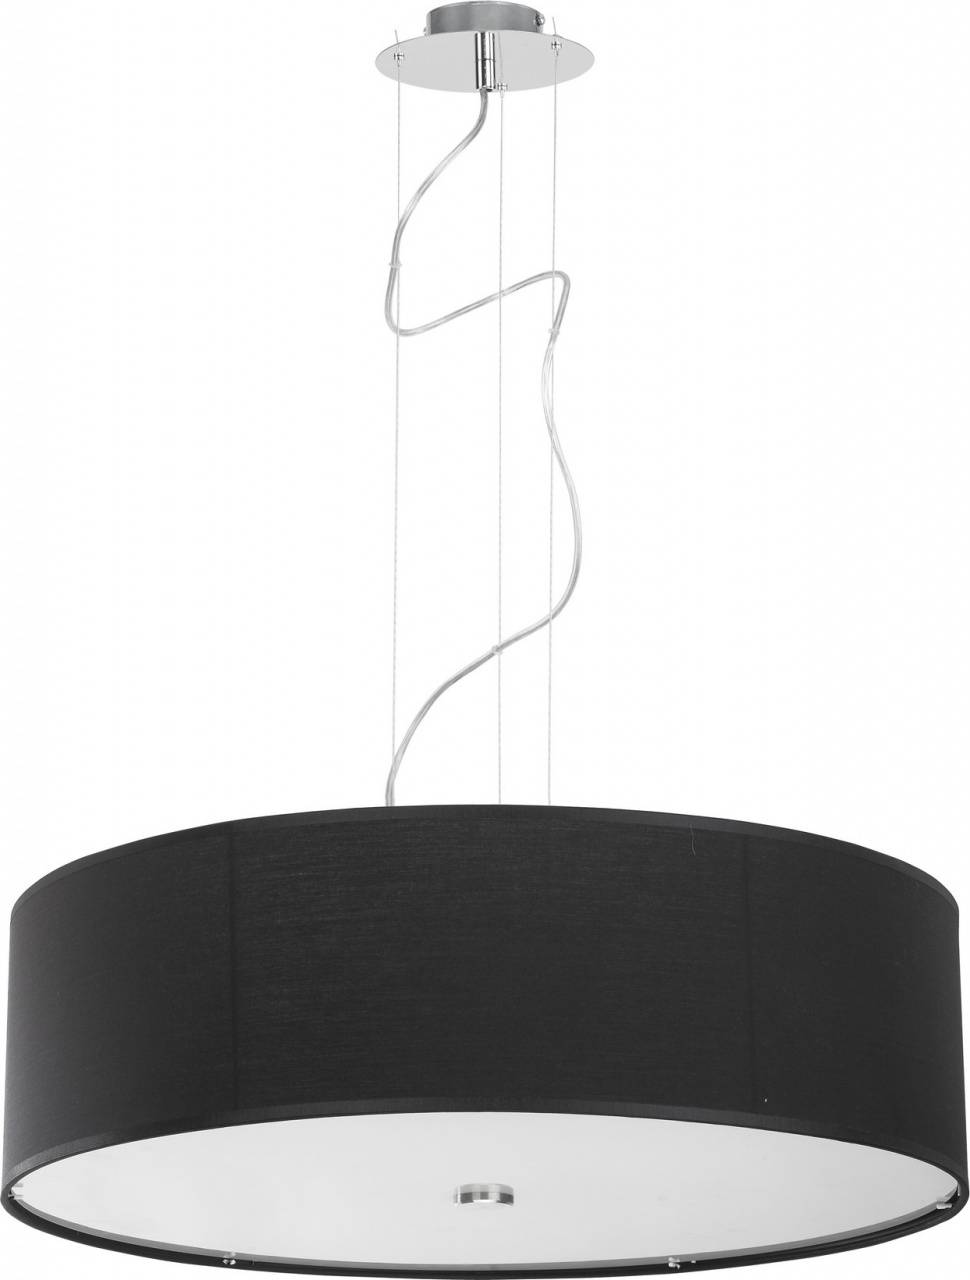 Подвесной светильник Nowodvorski Viviane 6774, диаметр 64 см,, хром/черный